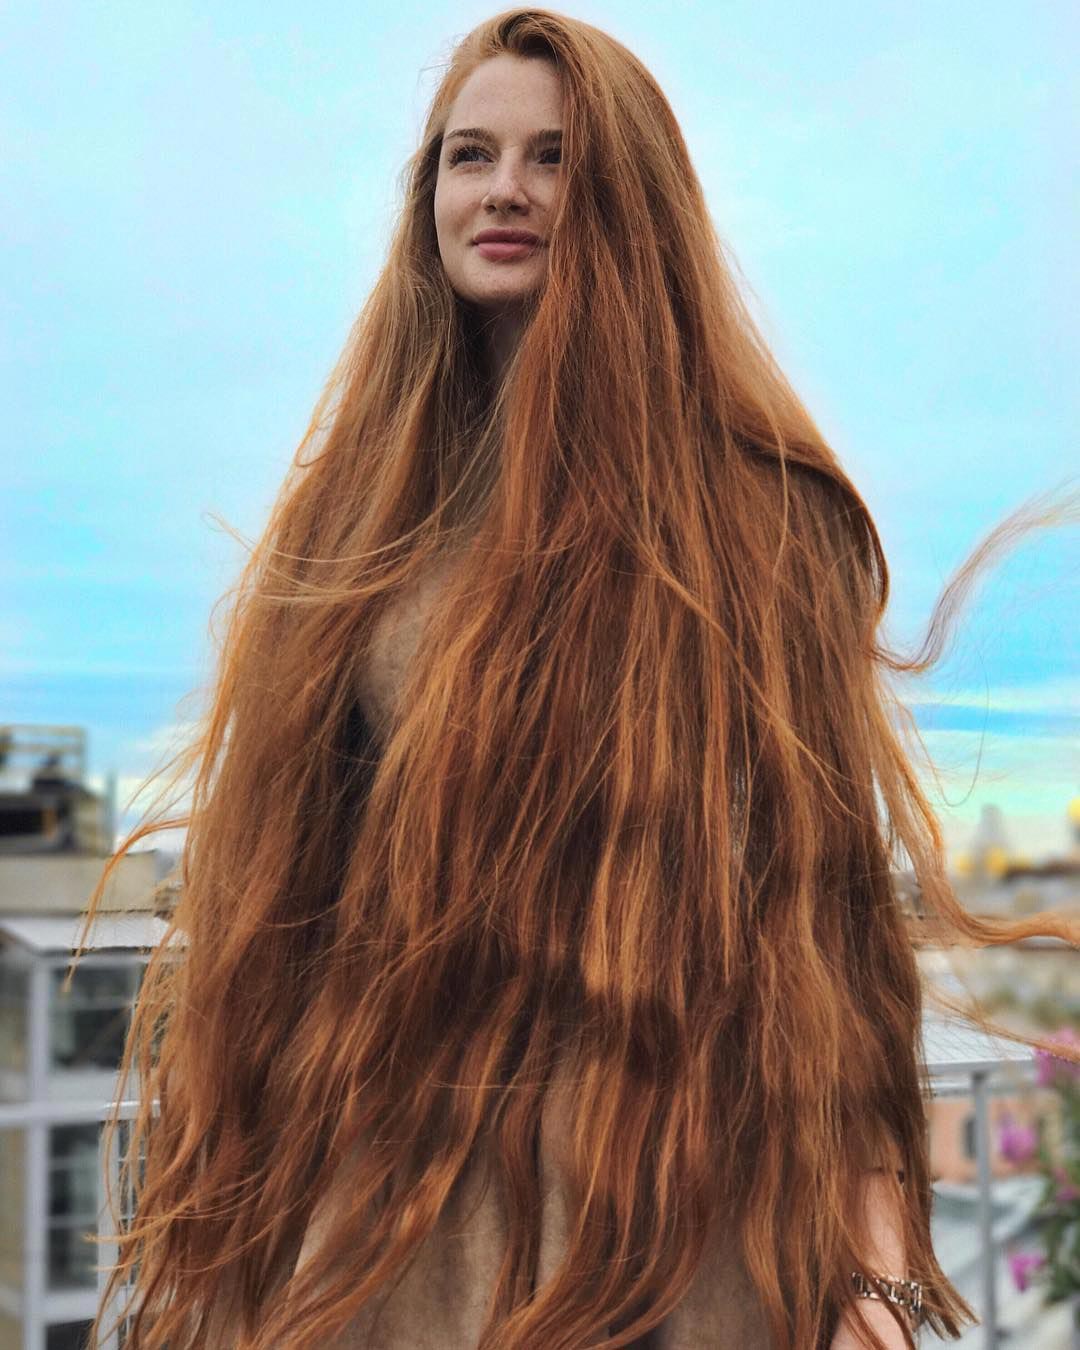 Анастасия Сидорова с длинными рыжими волосами